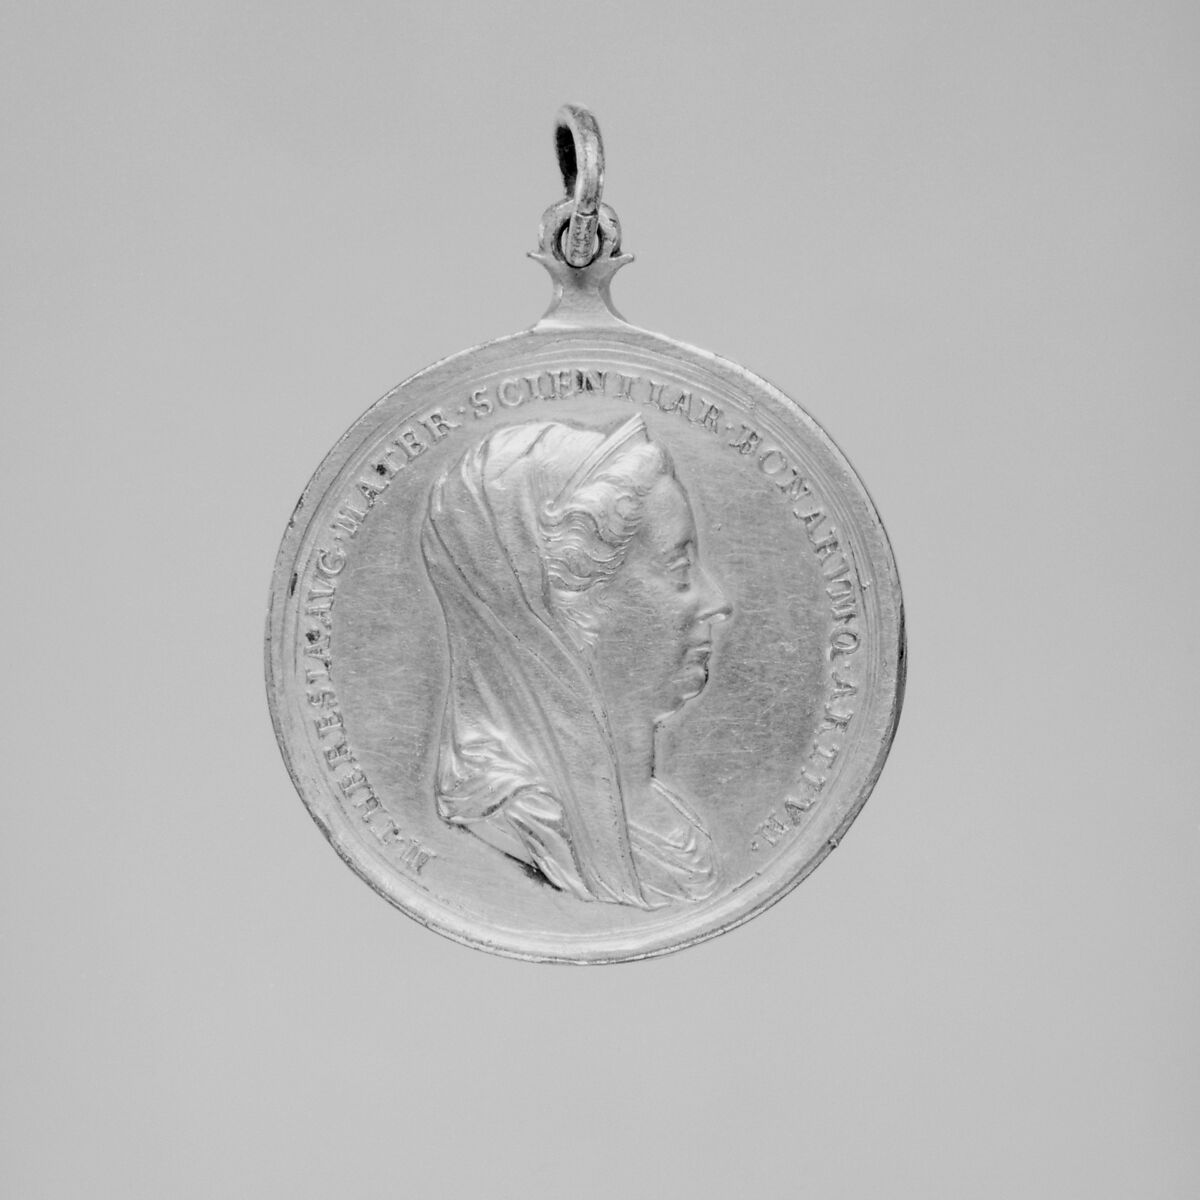 Amelioration of the Study of Latin in Public Schools, Medalist: Anton Franz Widemann (1724–1792), Gilt bronze, Austrian, Vienna 